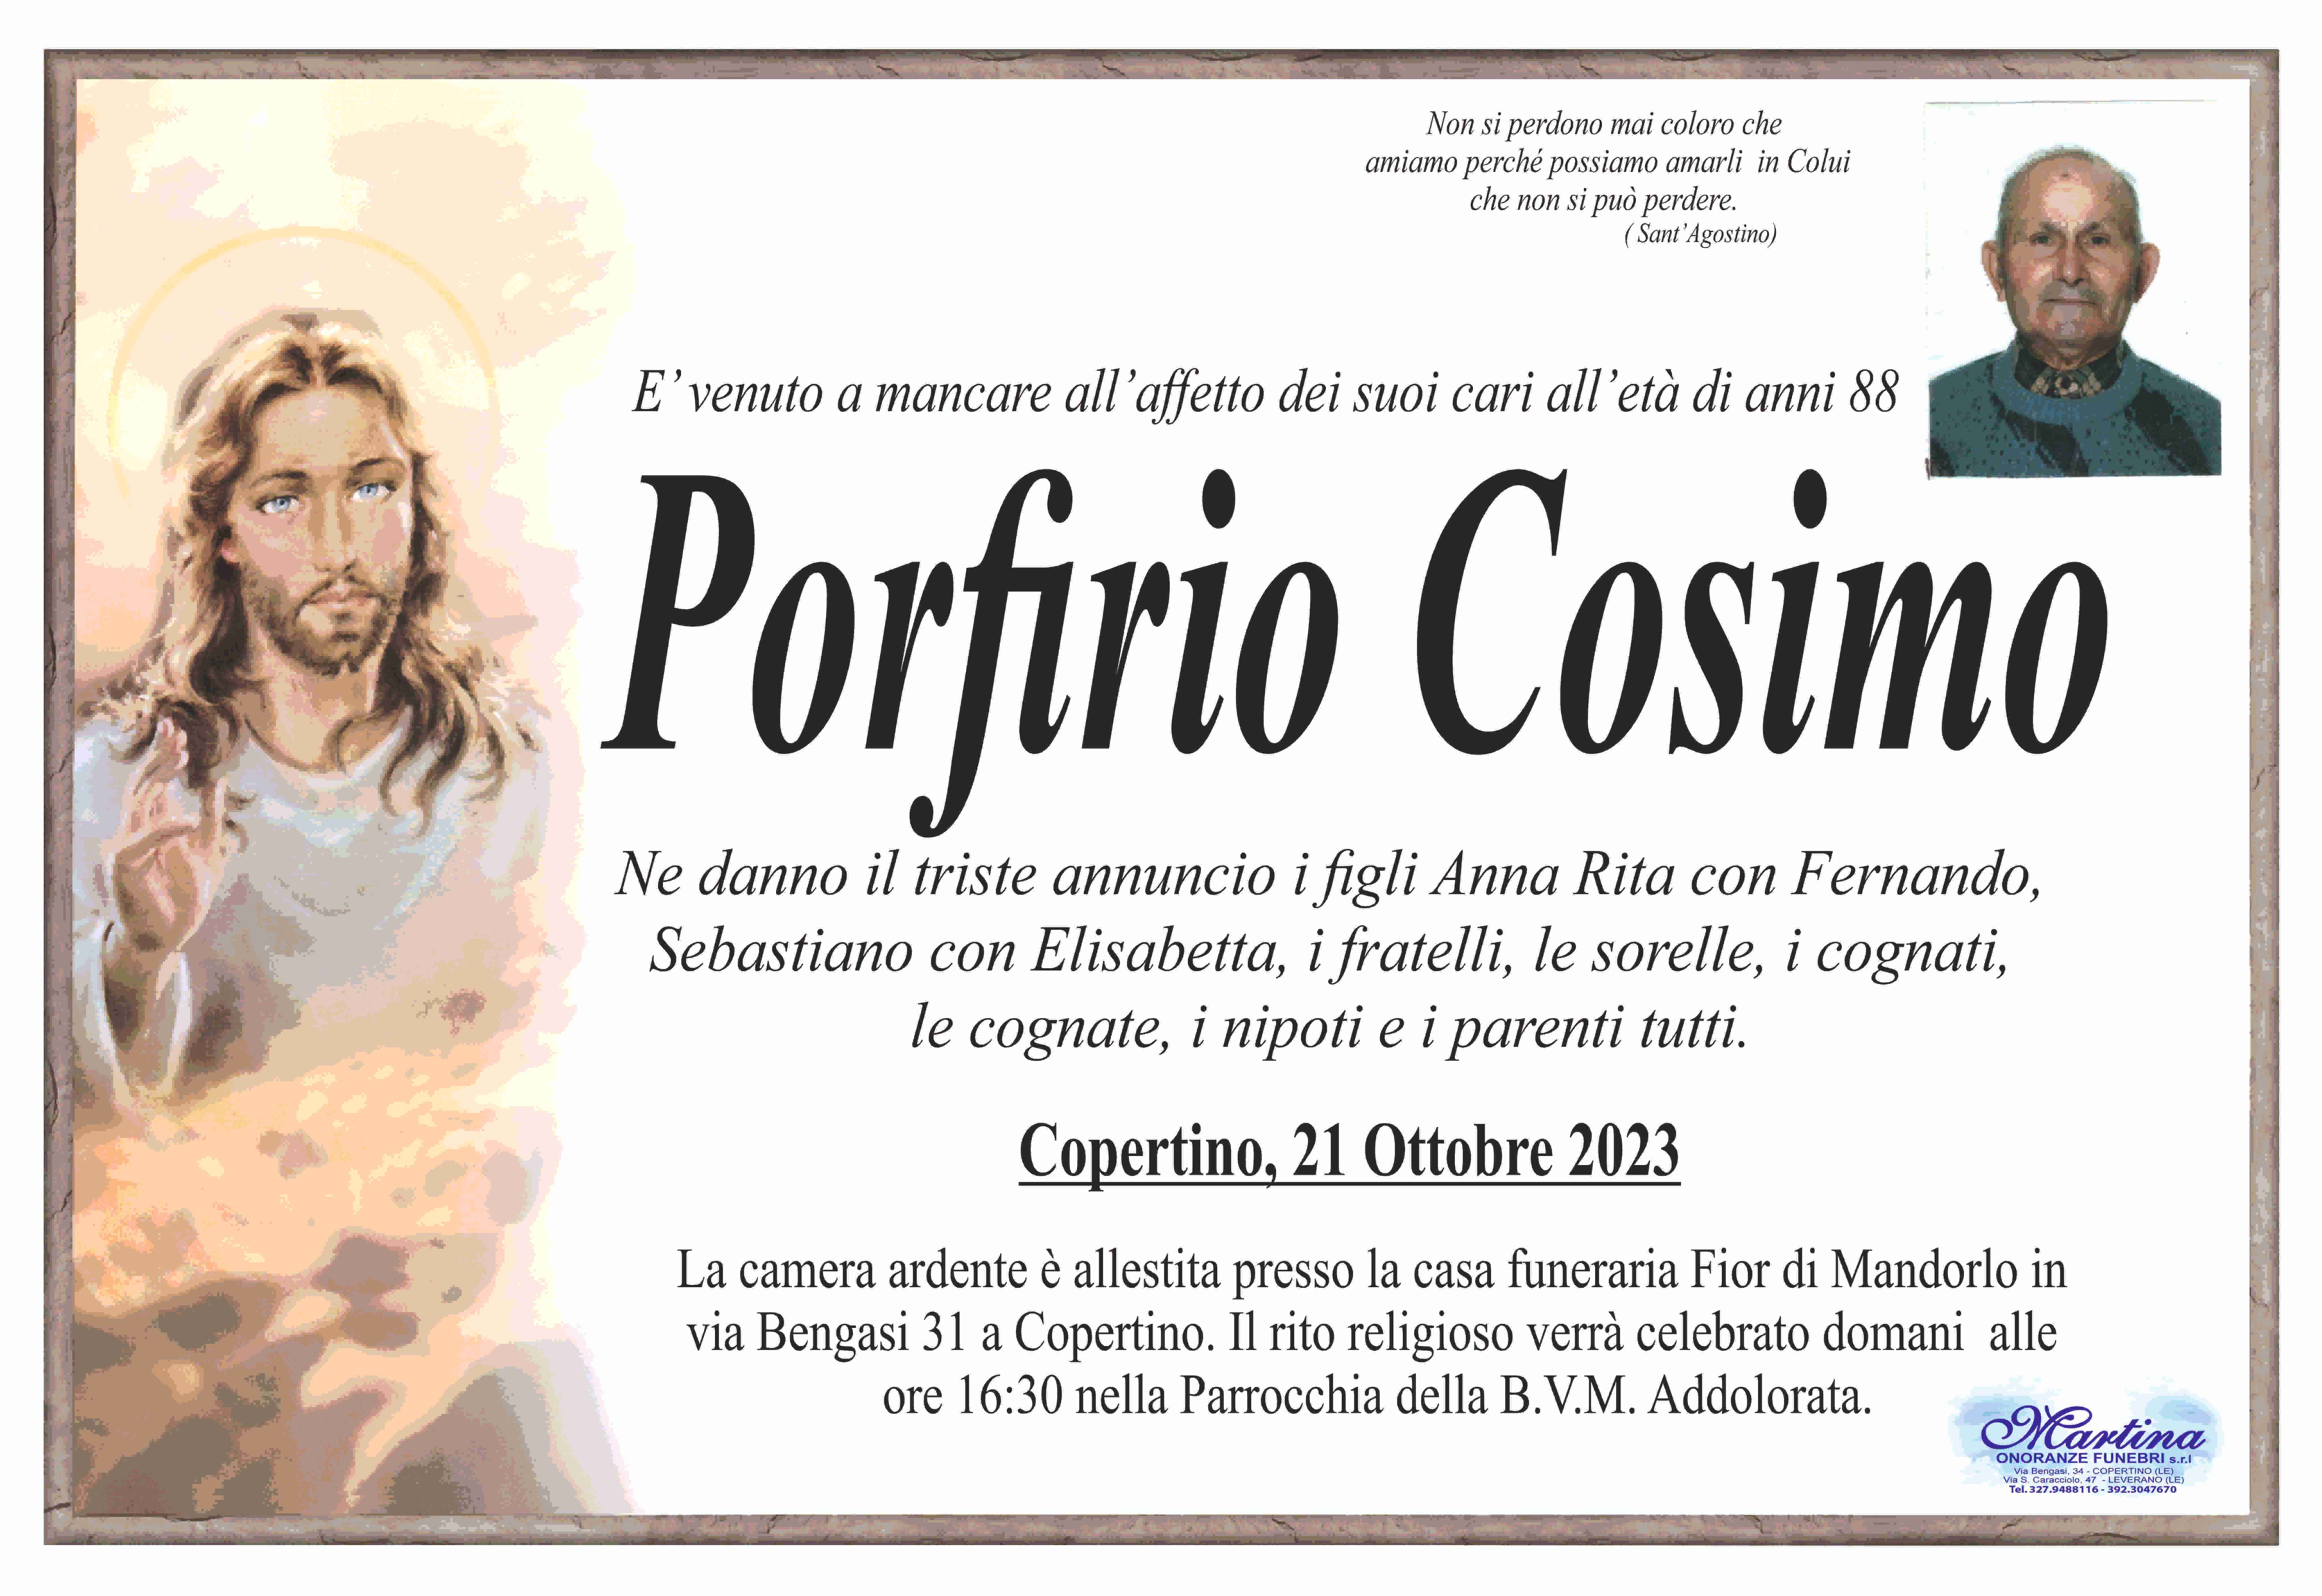 Cosimo Porfirio